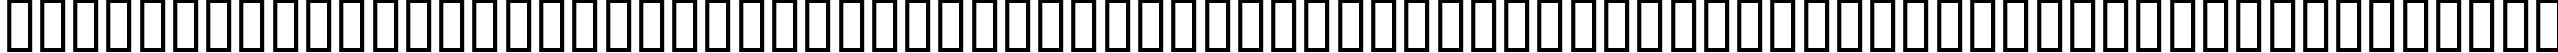 Пример написания английского алфавита шрифтом AdlibC